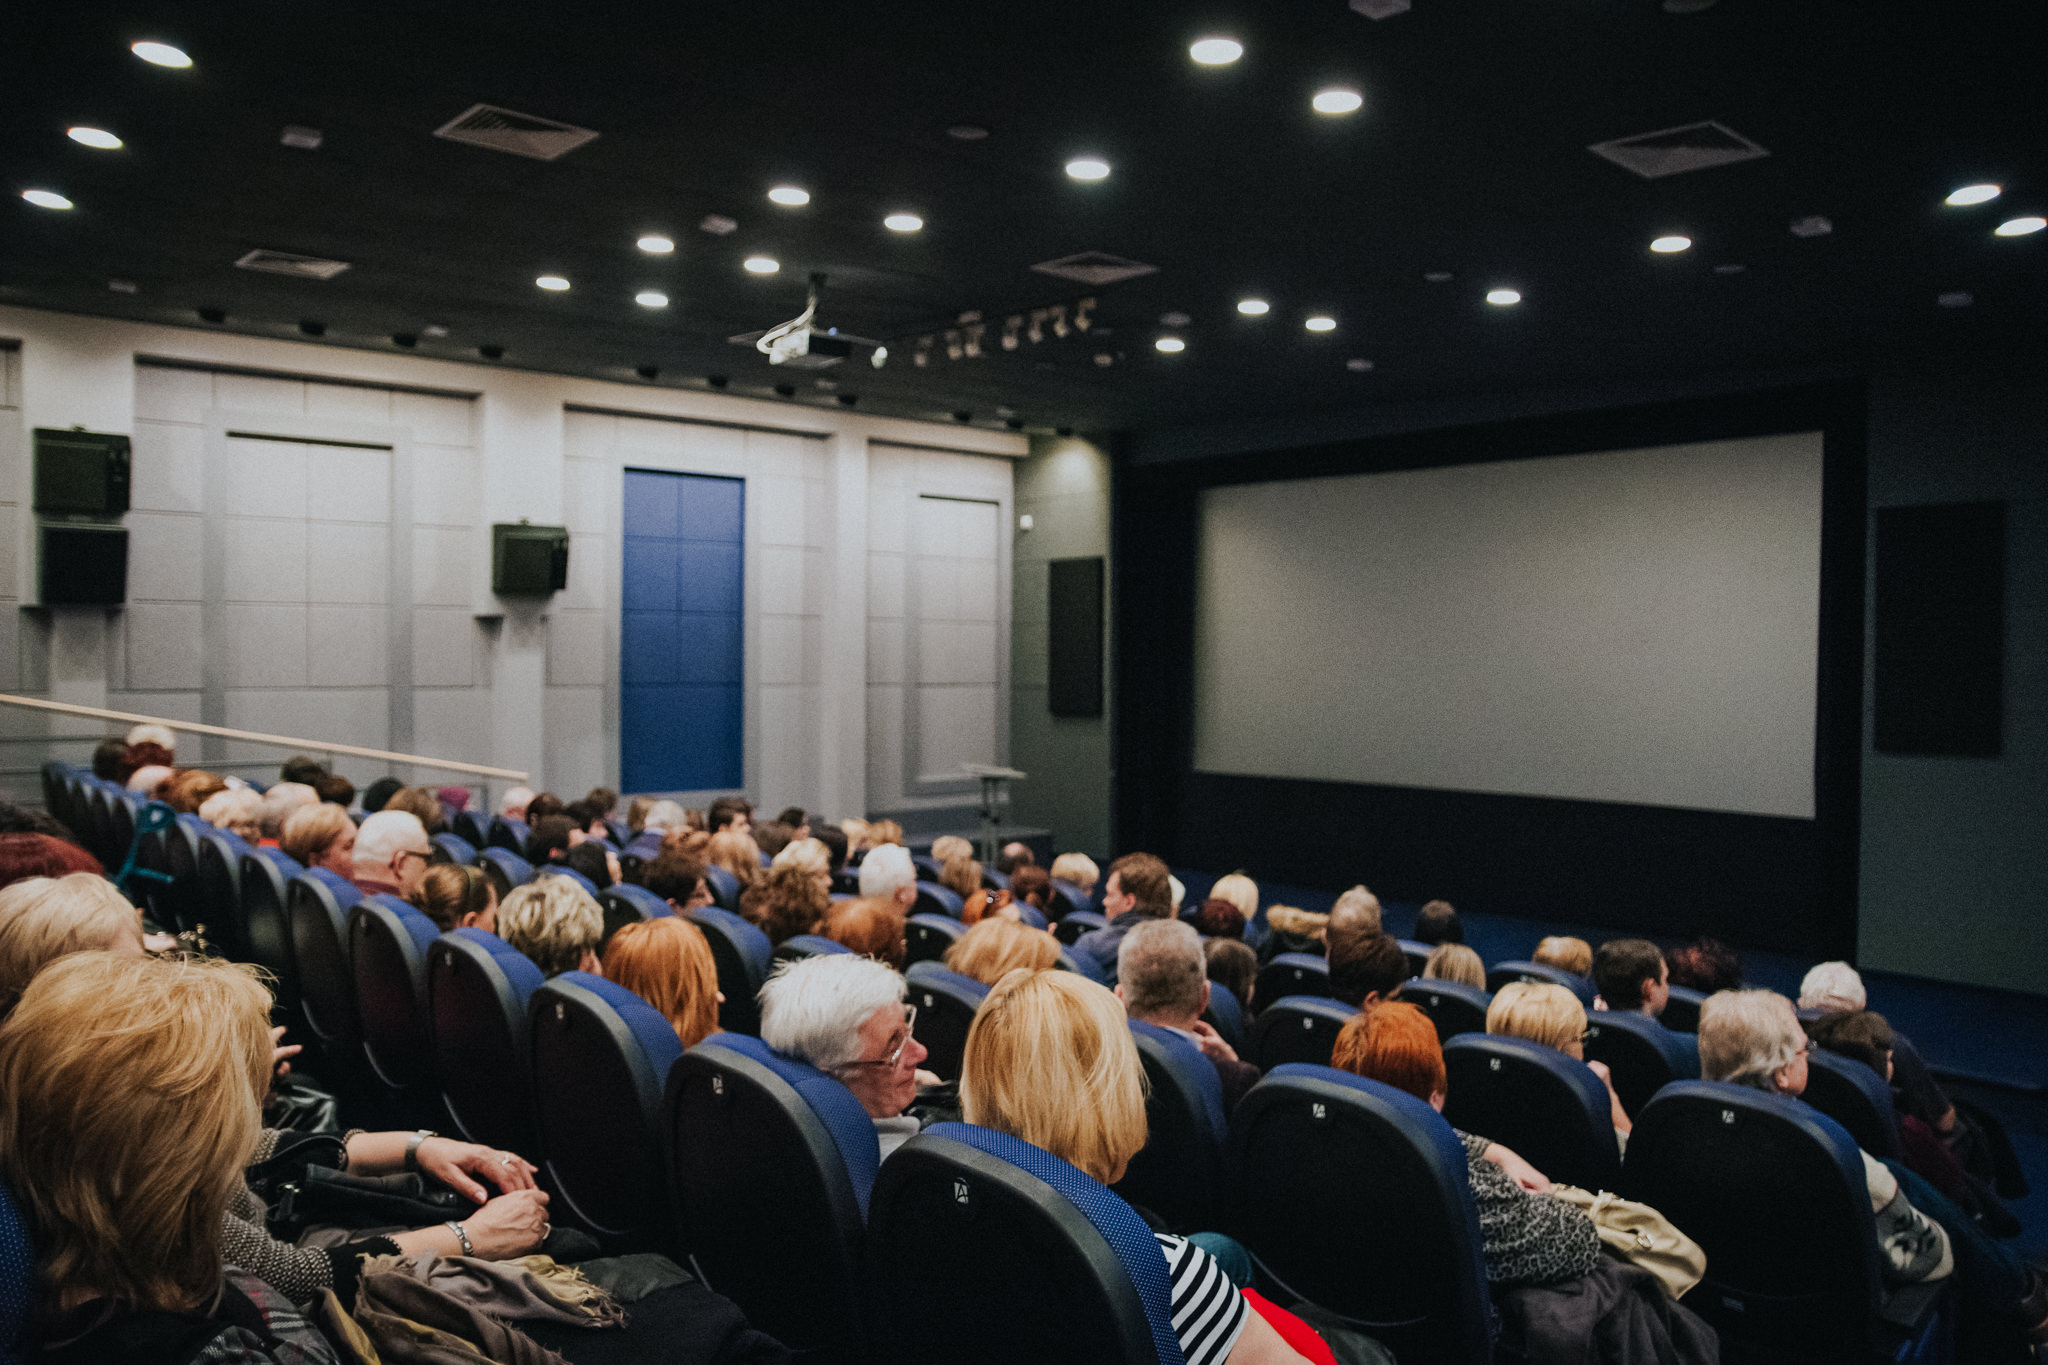 Kino Studyjne OKF Iluzja w Częstochowie | Oskarowe Otwarcie